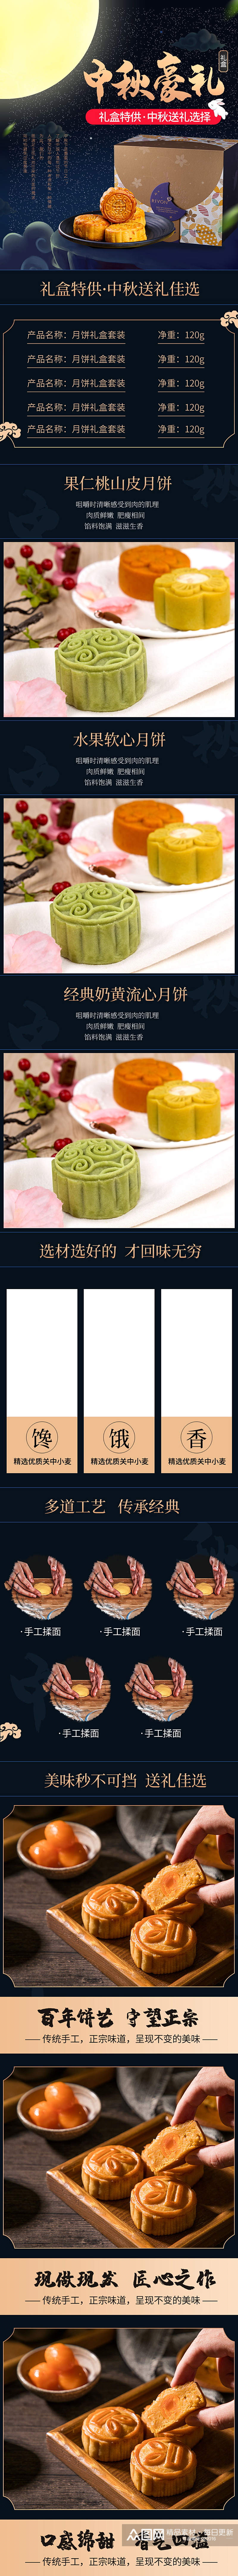 淘宝食品茶饮中秋节月饼详情页素材